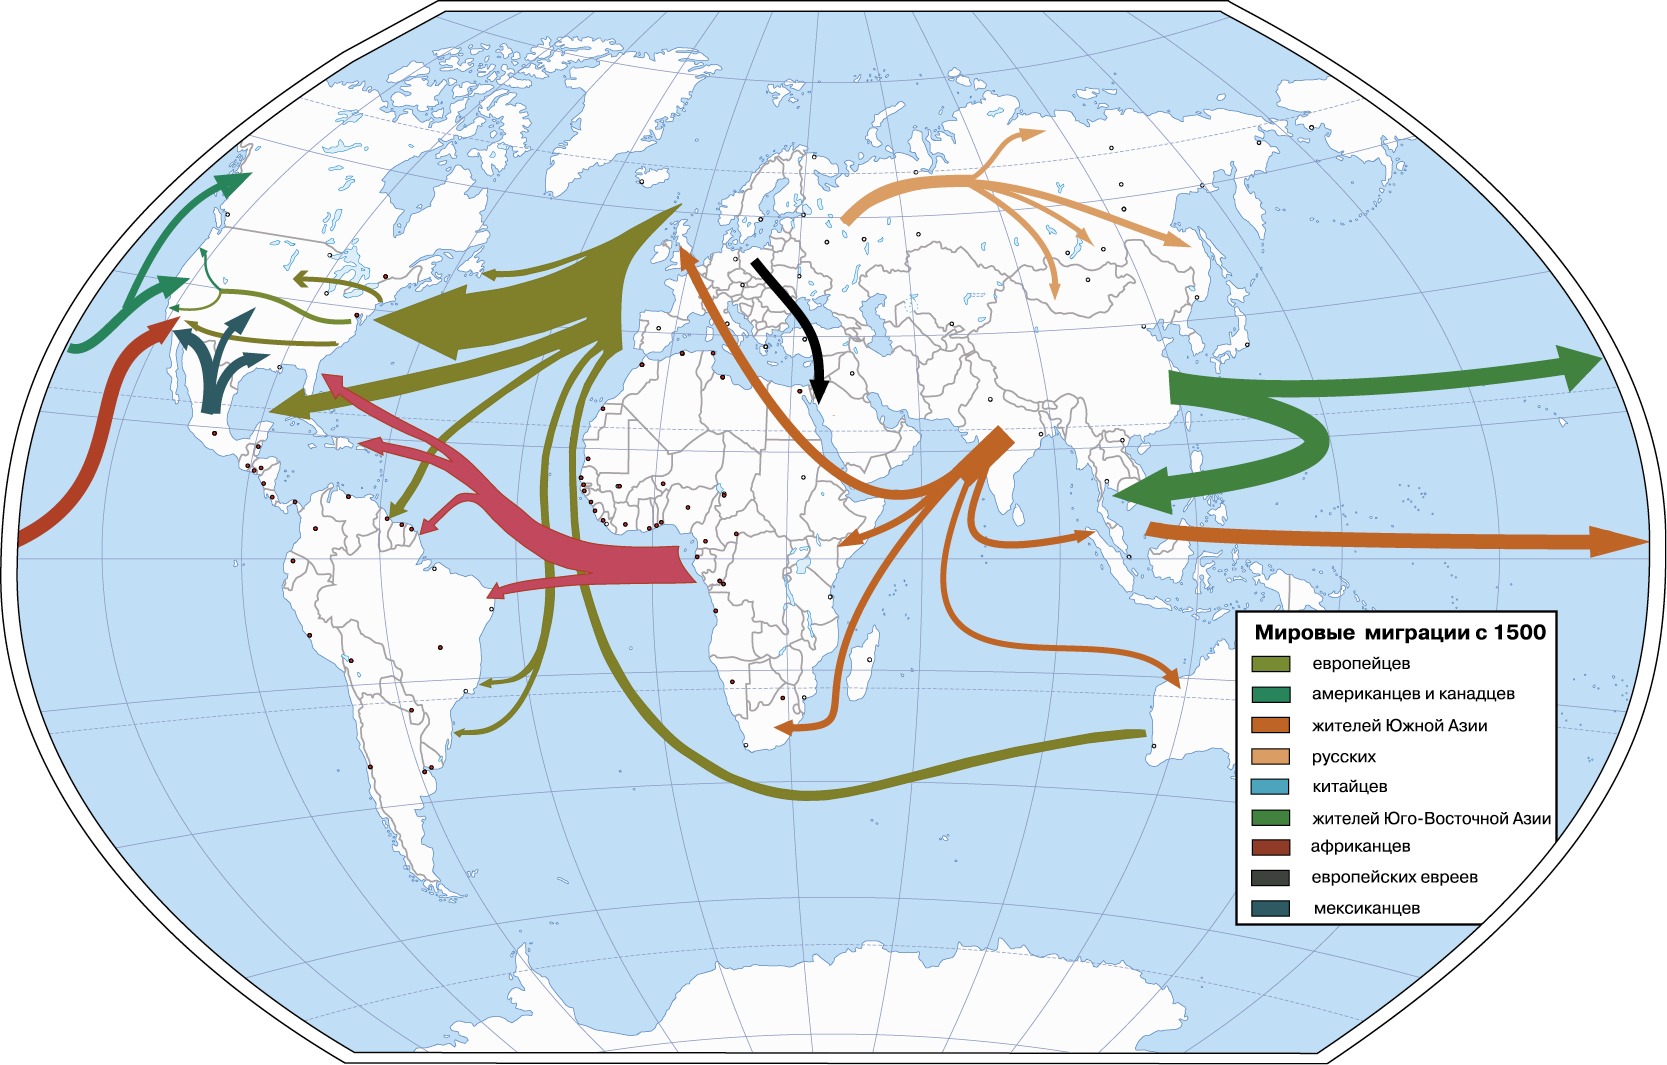 Миграция мирового населения. Основные направления миграционных потоков в мире.